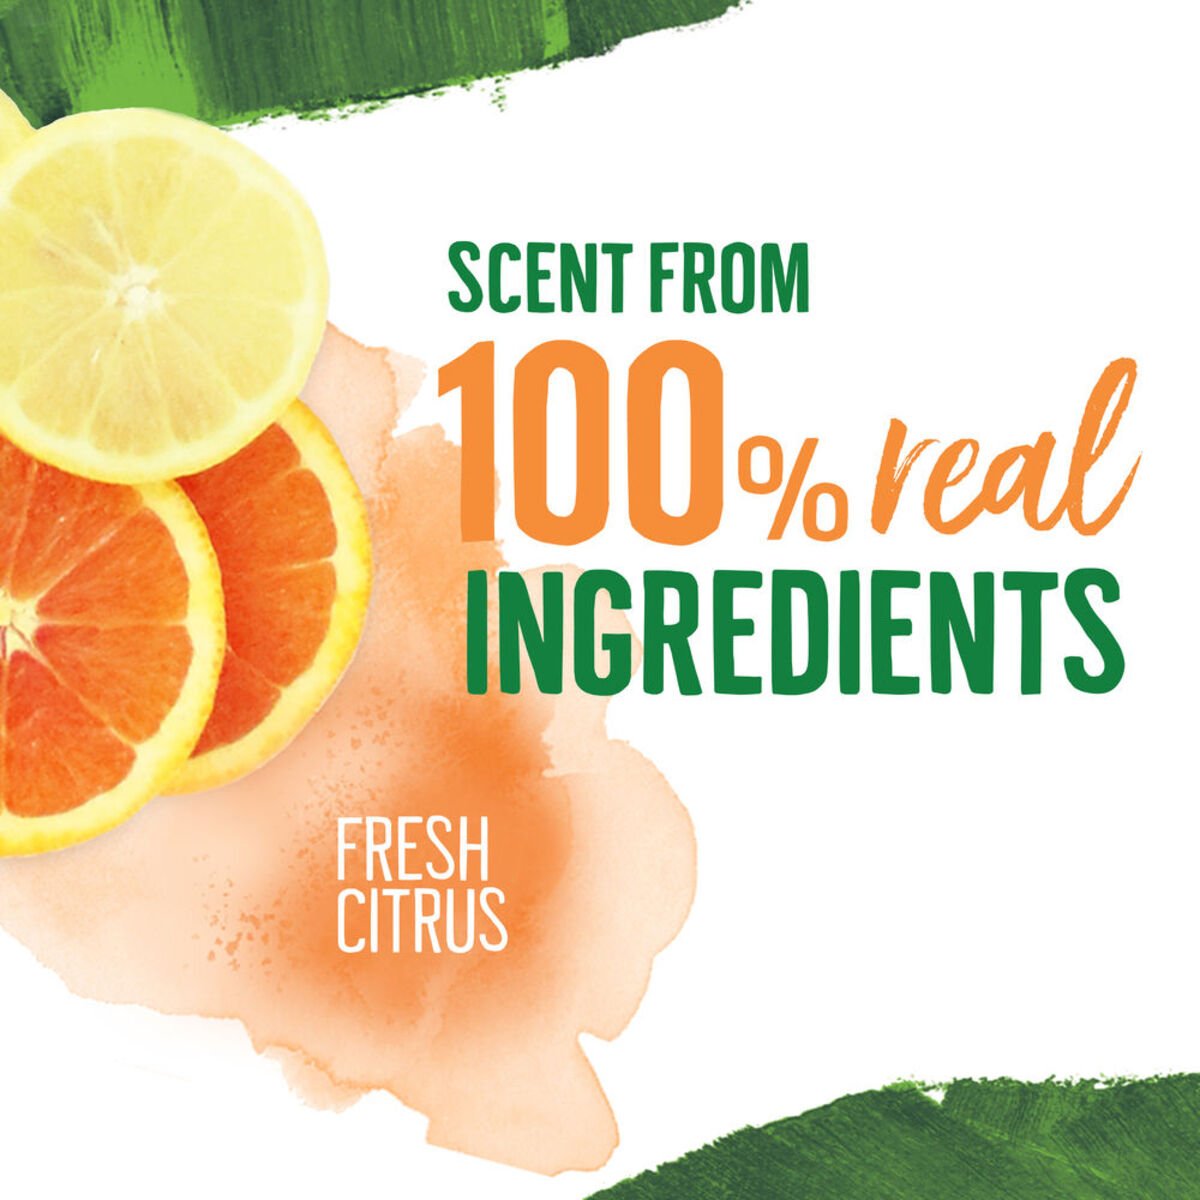 Seventh Generation Plant Based Detergent Citrus 2Litre